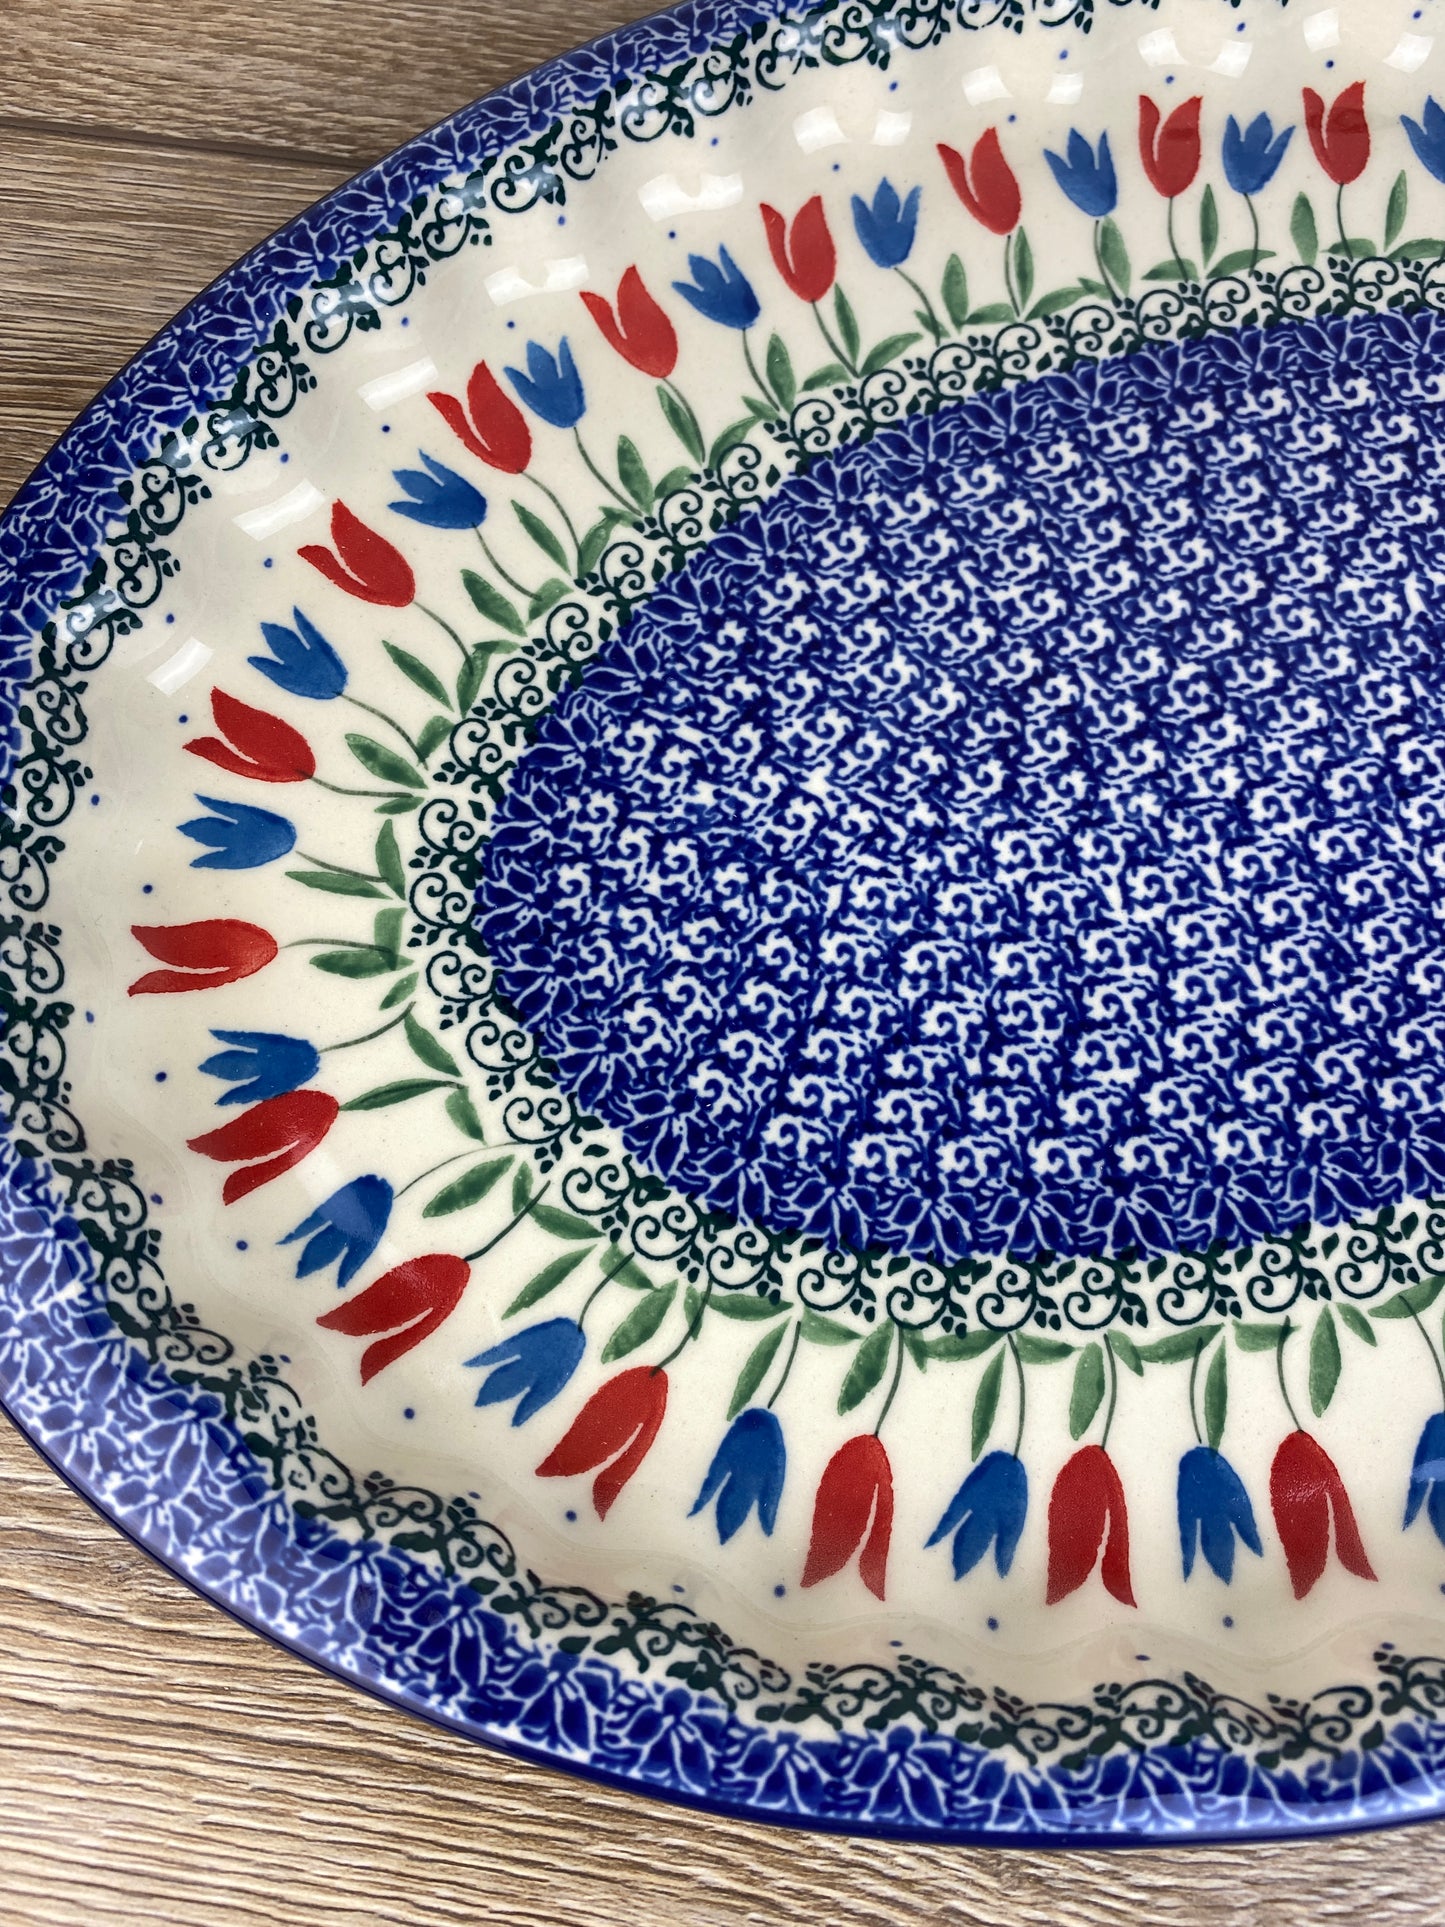 SALE Oval Platter - Shape 614 - Pattern 2599